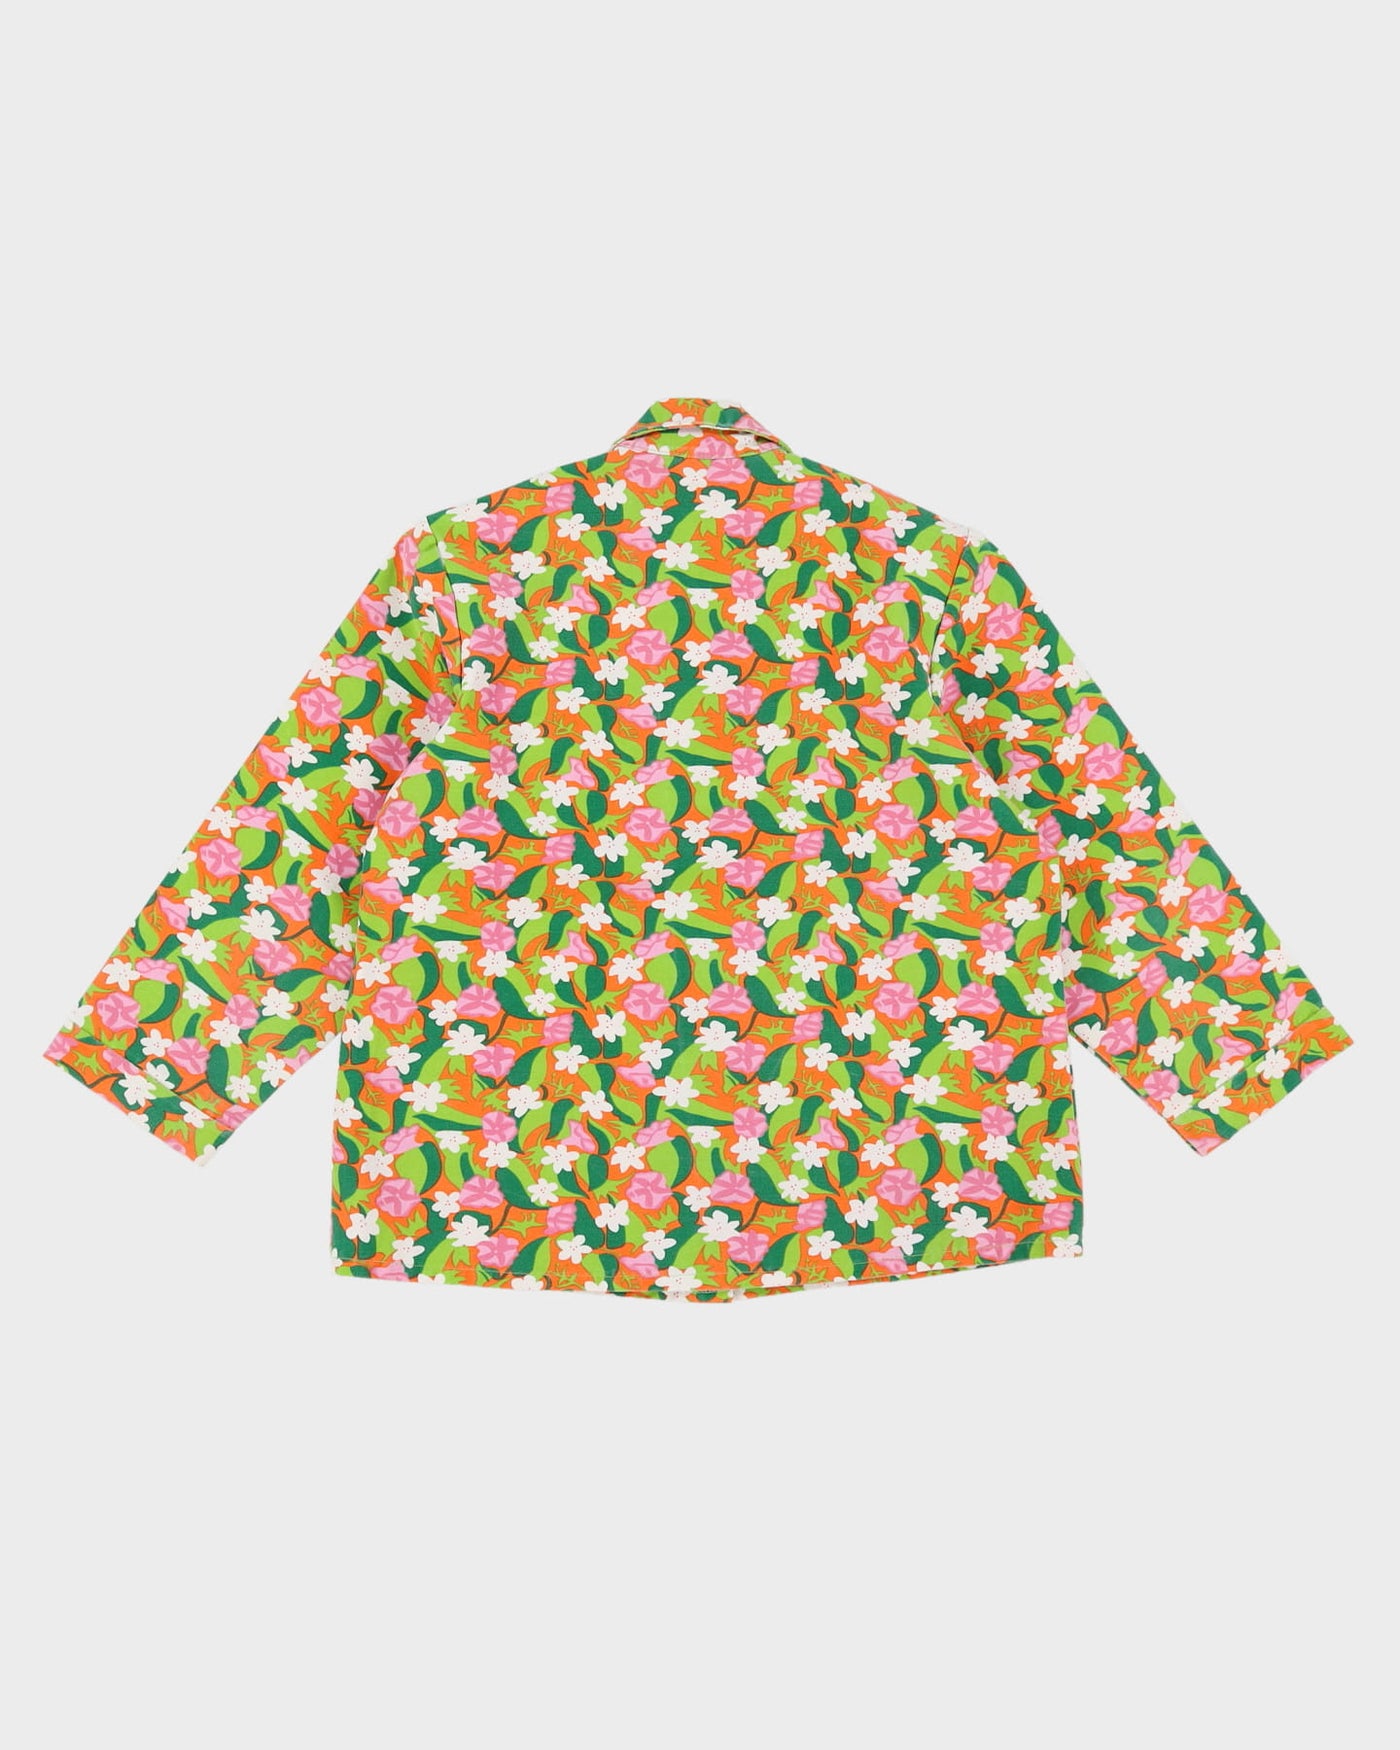 1960s floral jacket / blouse - S / M